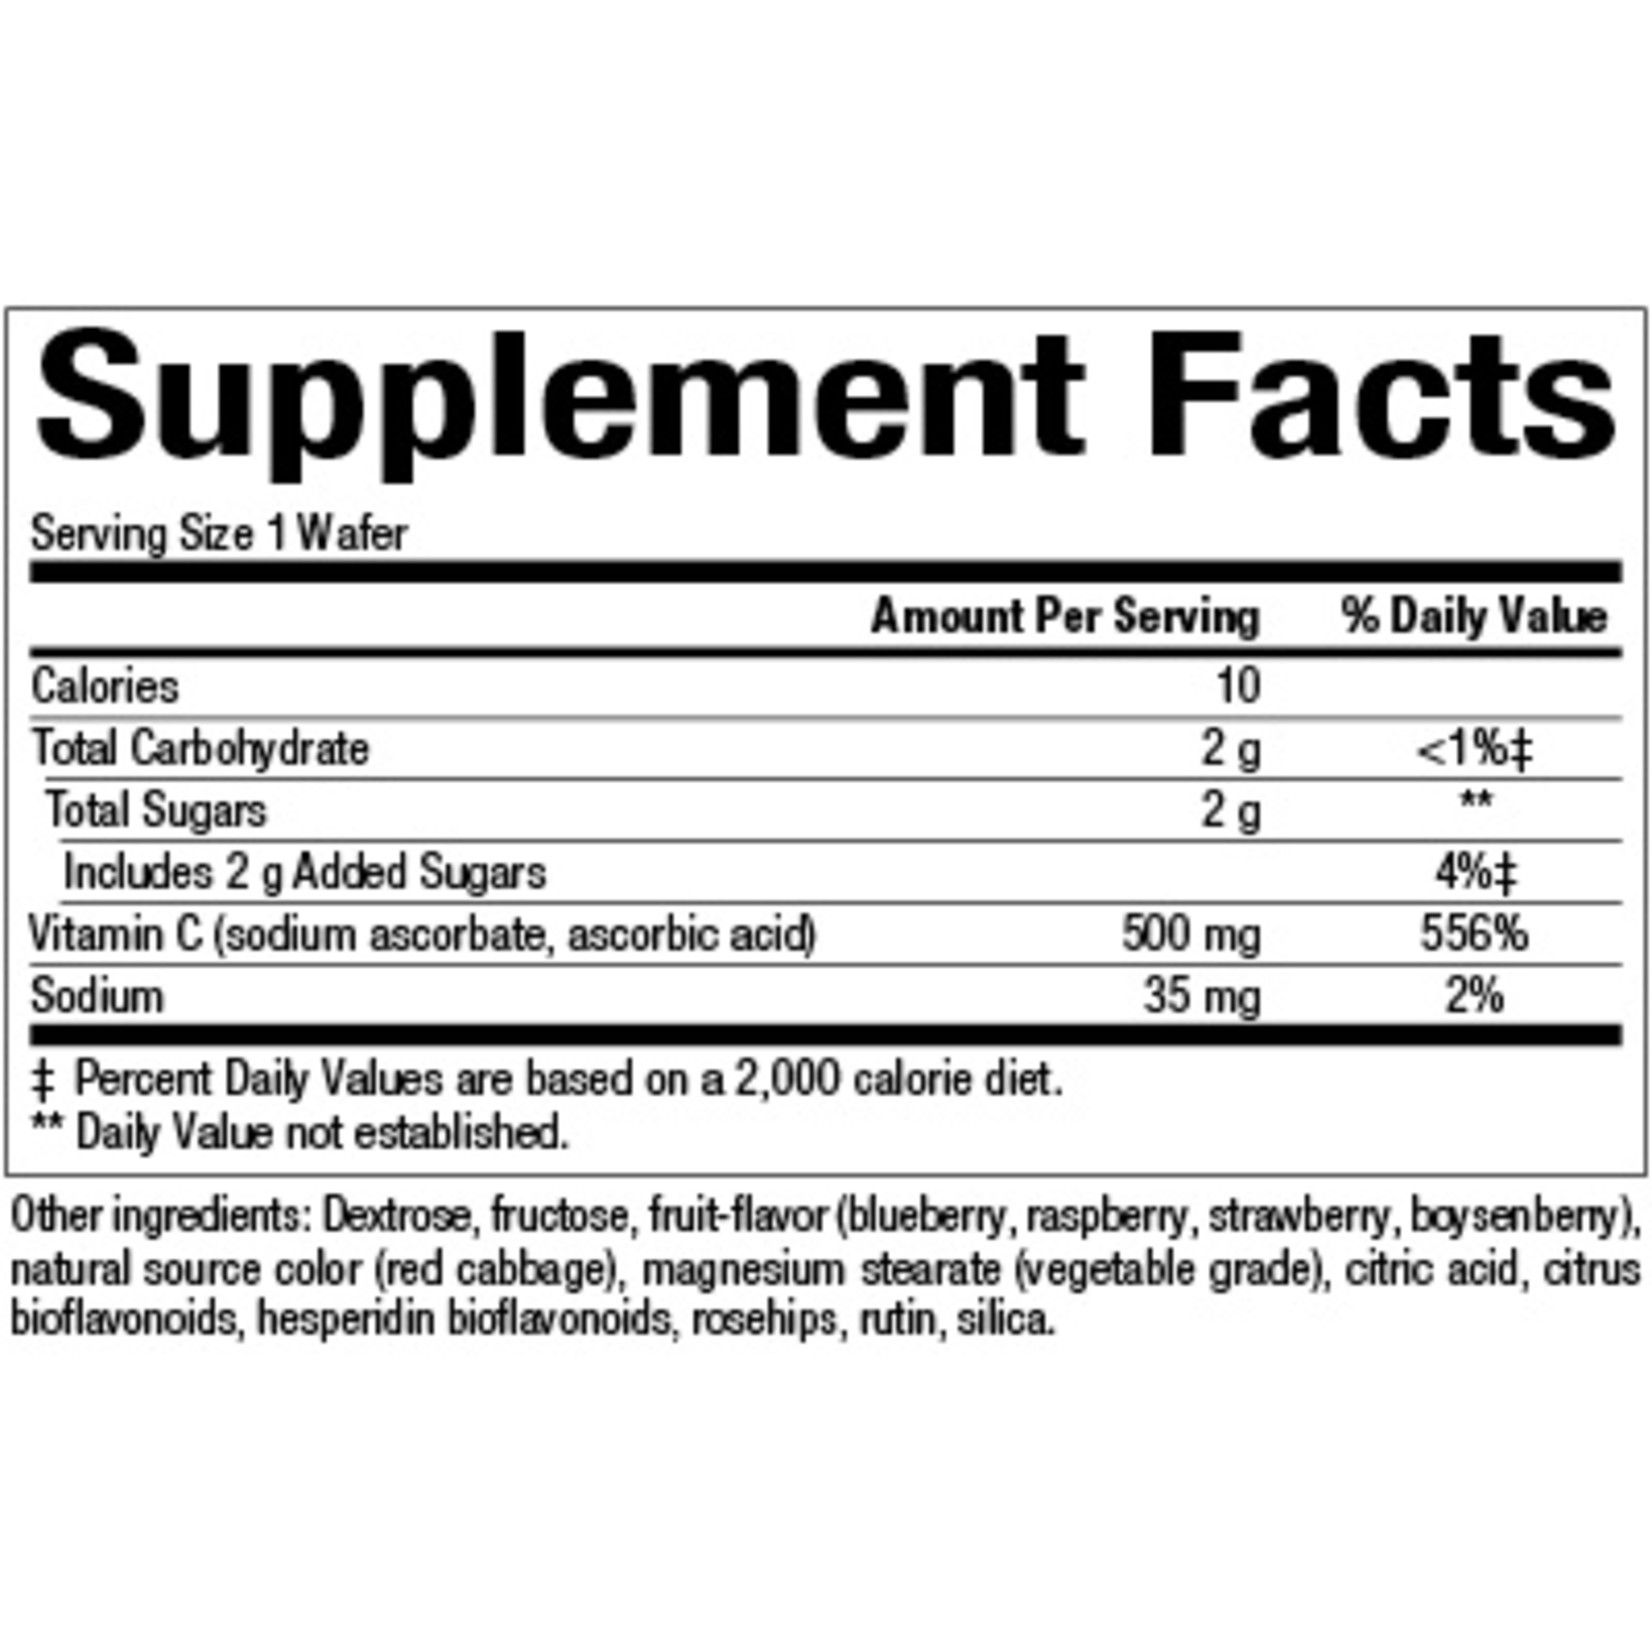 Natural Factors Natural Factors - C 500 mg Natural Fruit Chews Blueberry Raspberry & Boysenberry - 180 Tablets